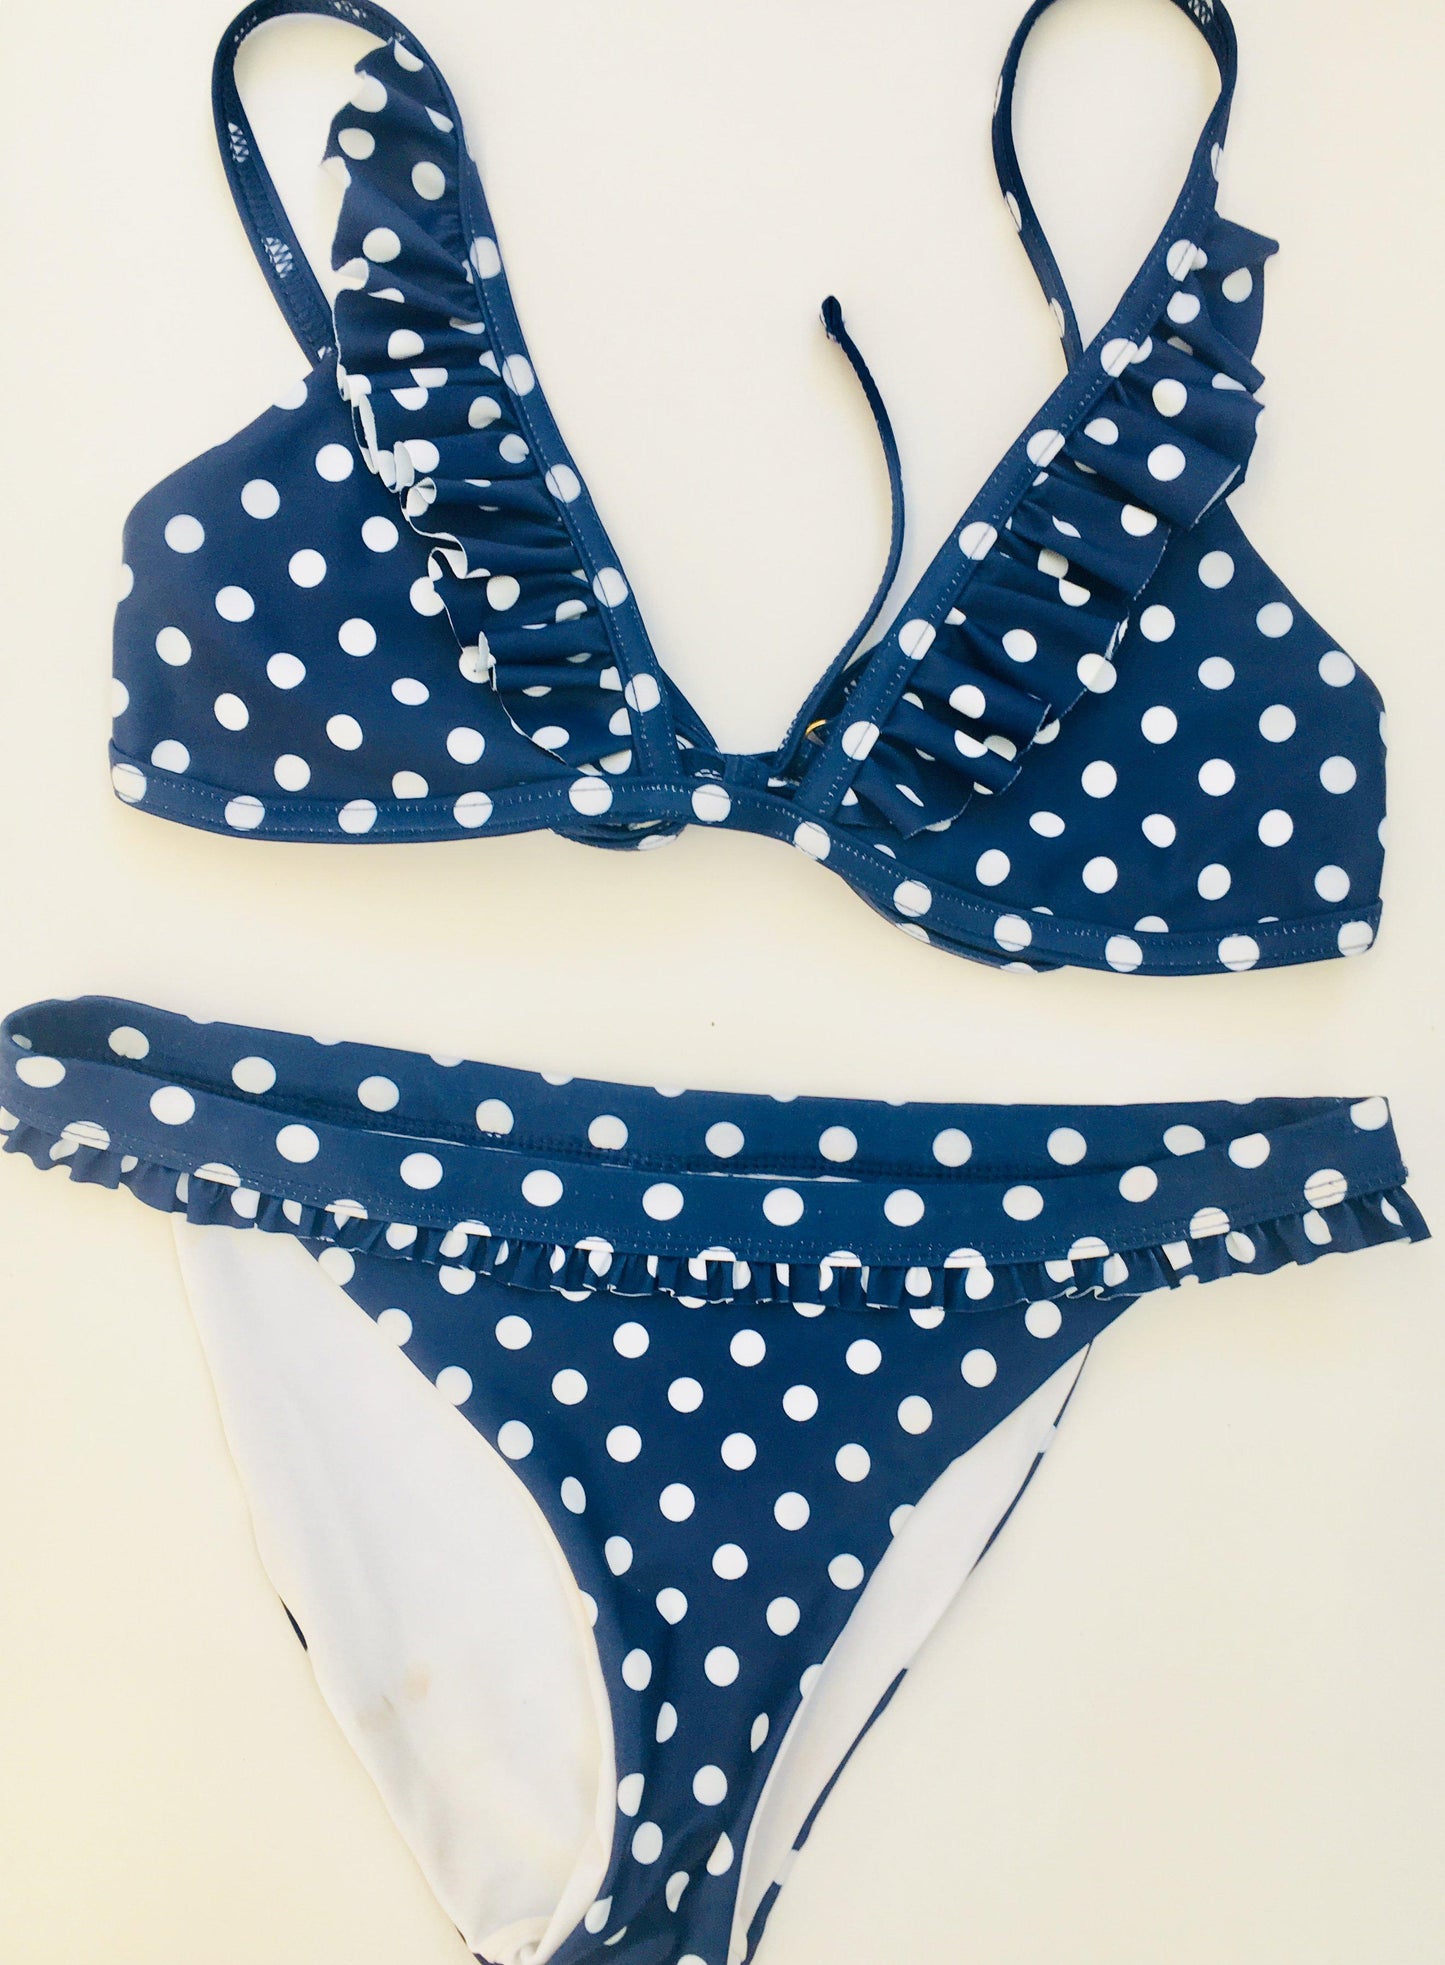 Matching Swimwear, Women's Bikini, White on Navy Polka Dot